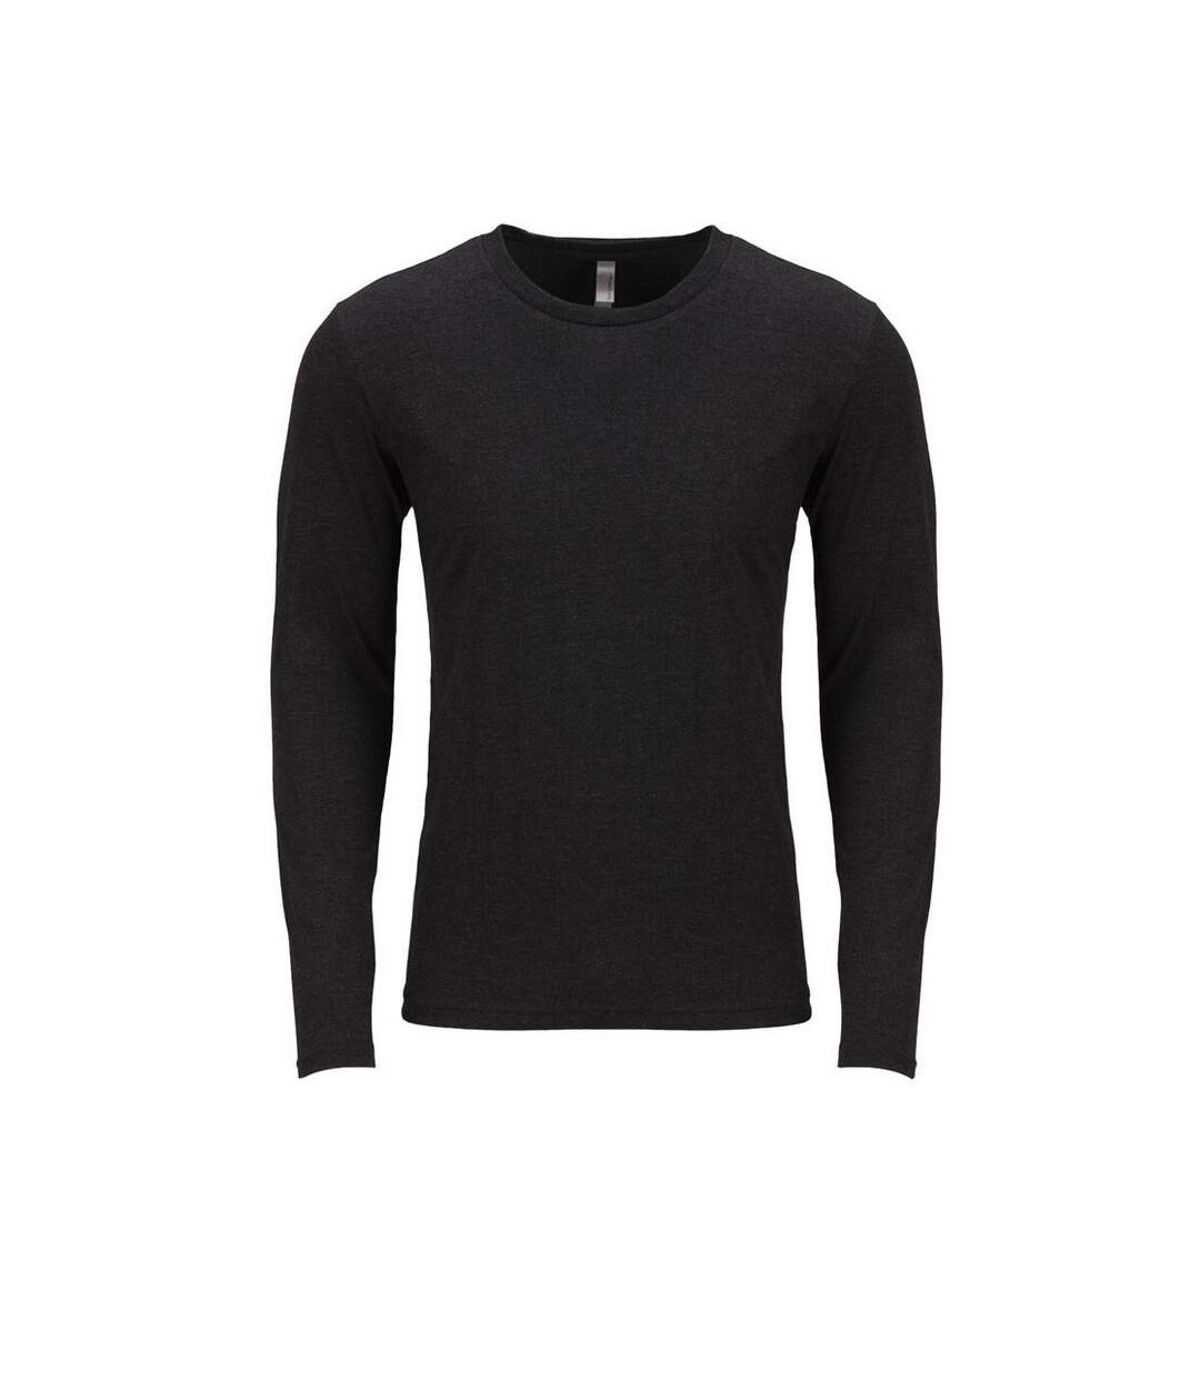 Next Level Adultes T-Shirt unisexe à manches longues en tissu ras-du-cou à triple épaisseur (Vintage Black) - UTPC3481